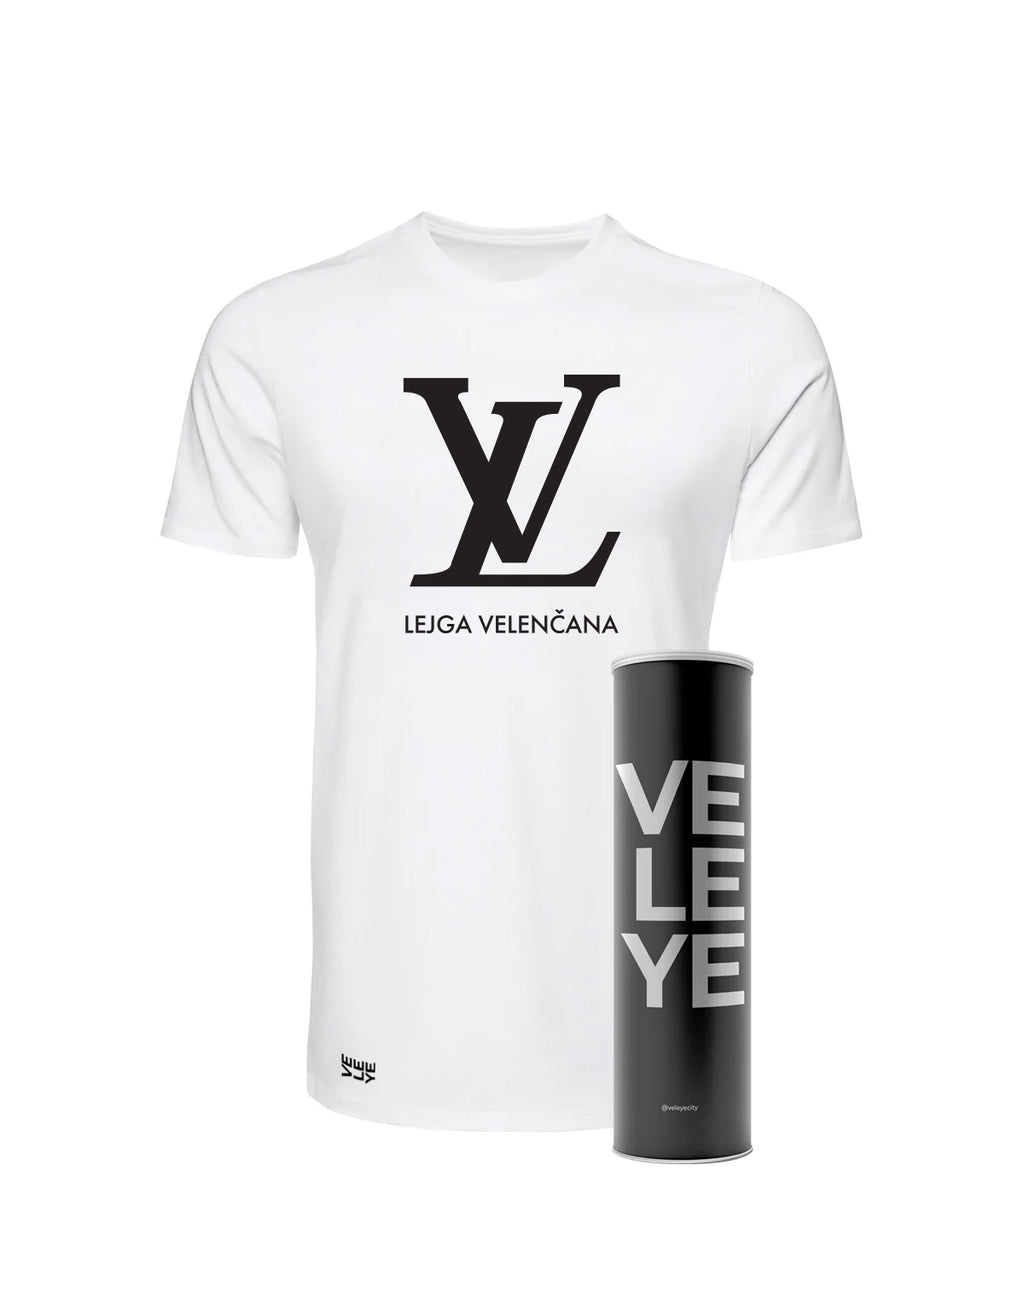 Veleye Limited V1 - LV